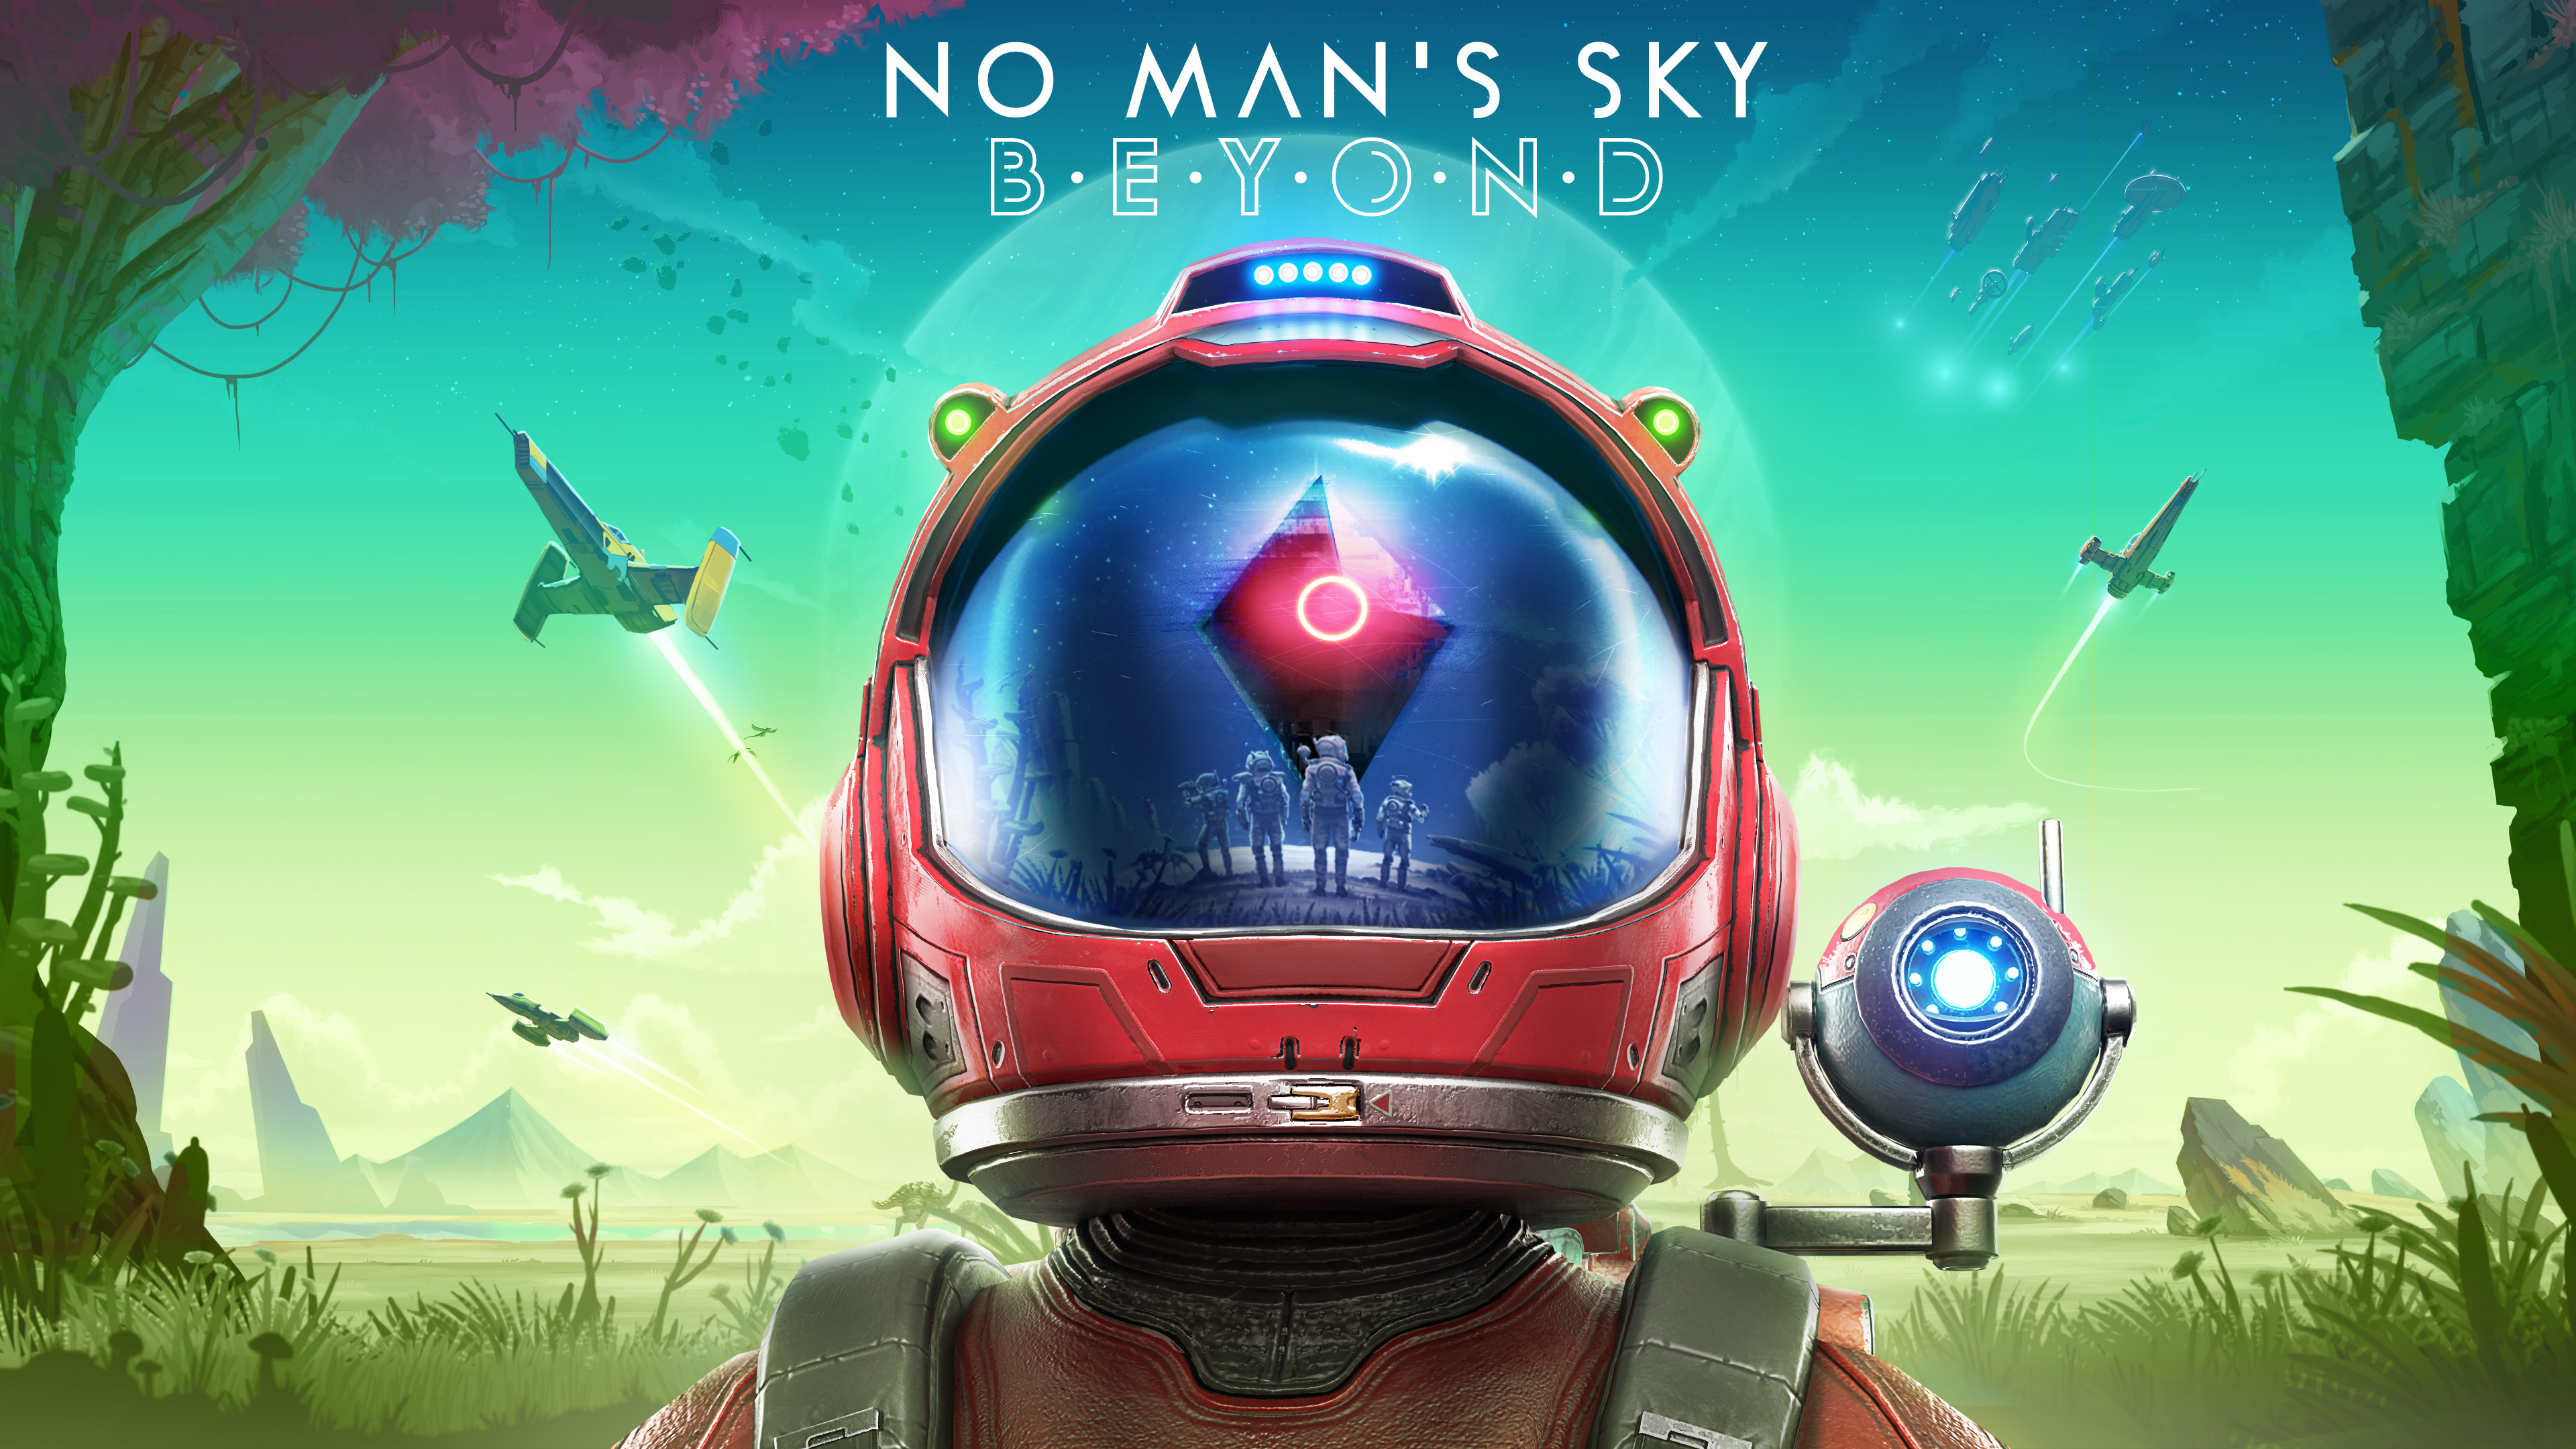 No Man's Sky Beyond - HD Wallpaper 